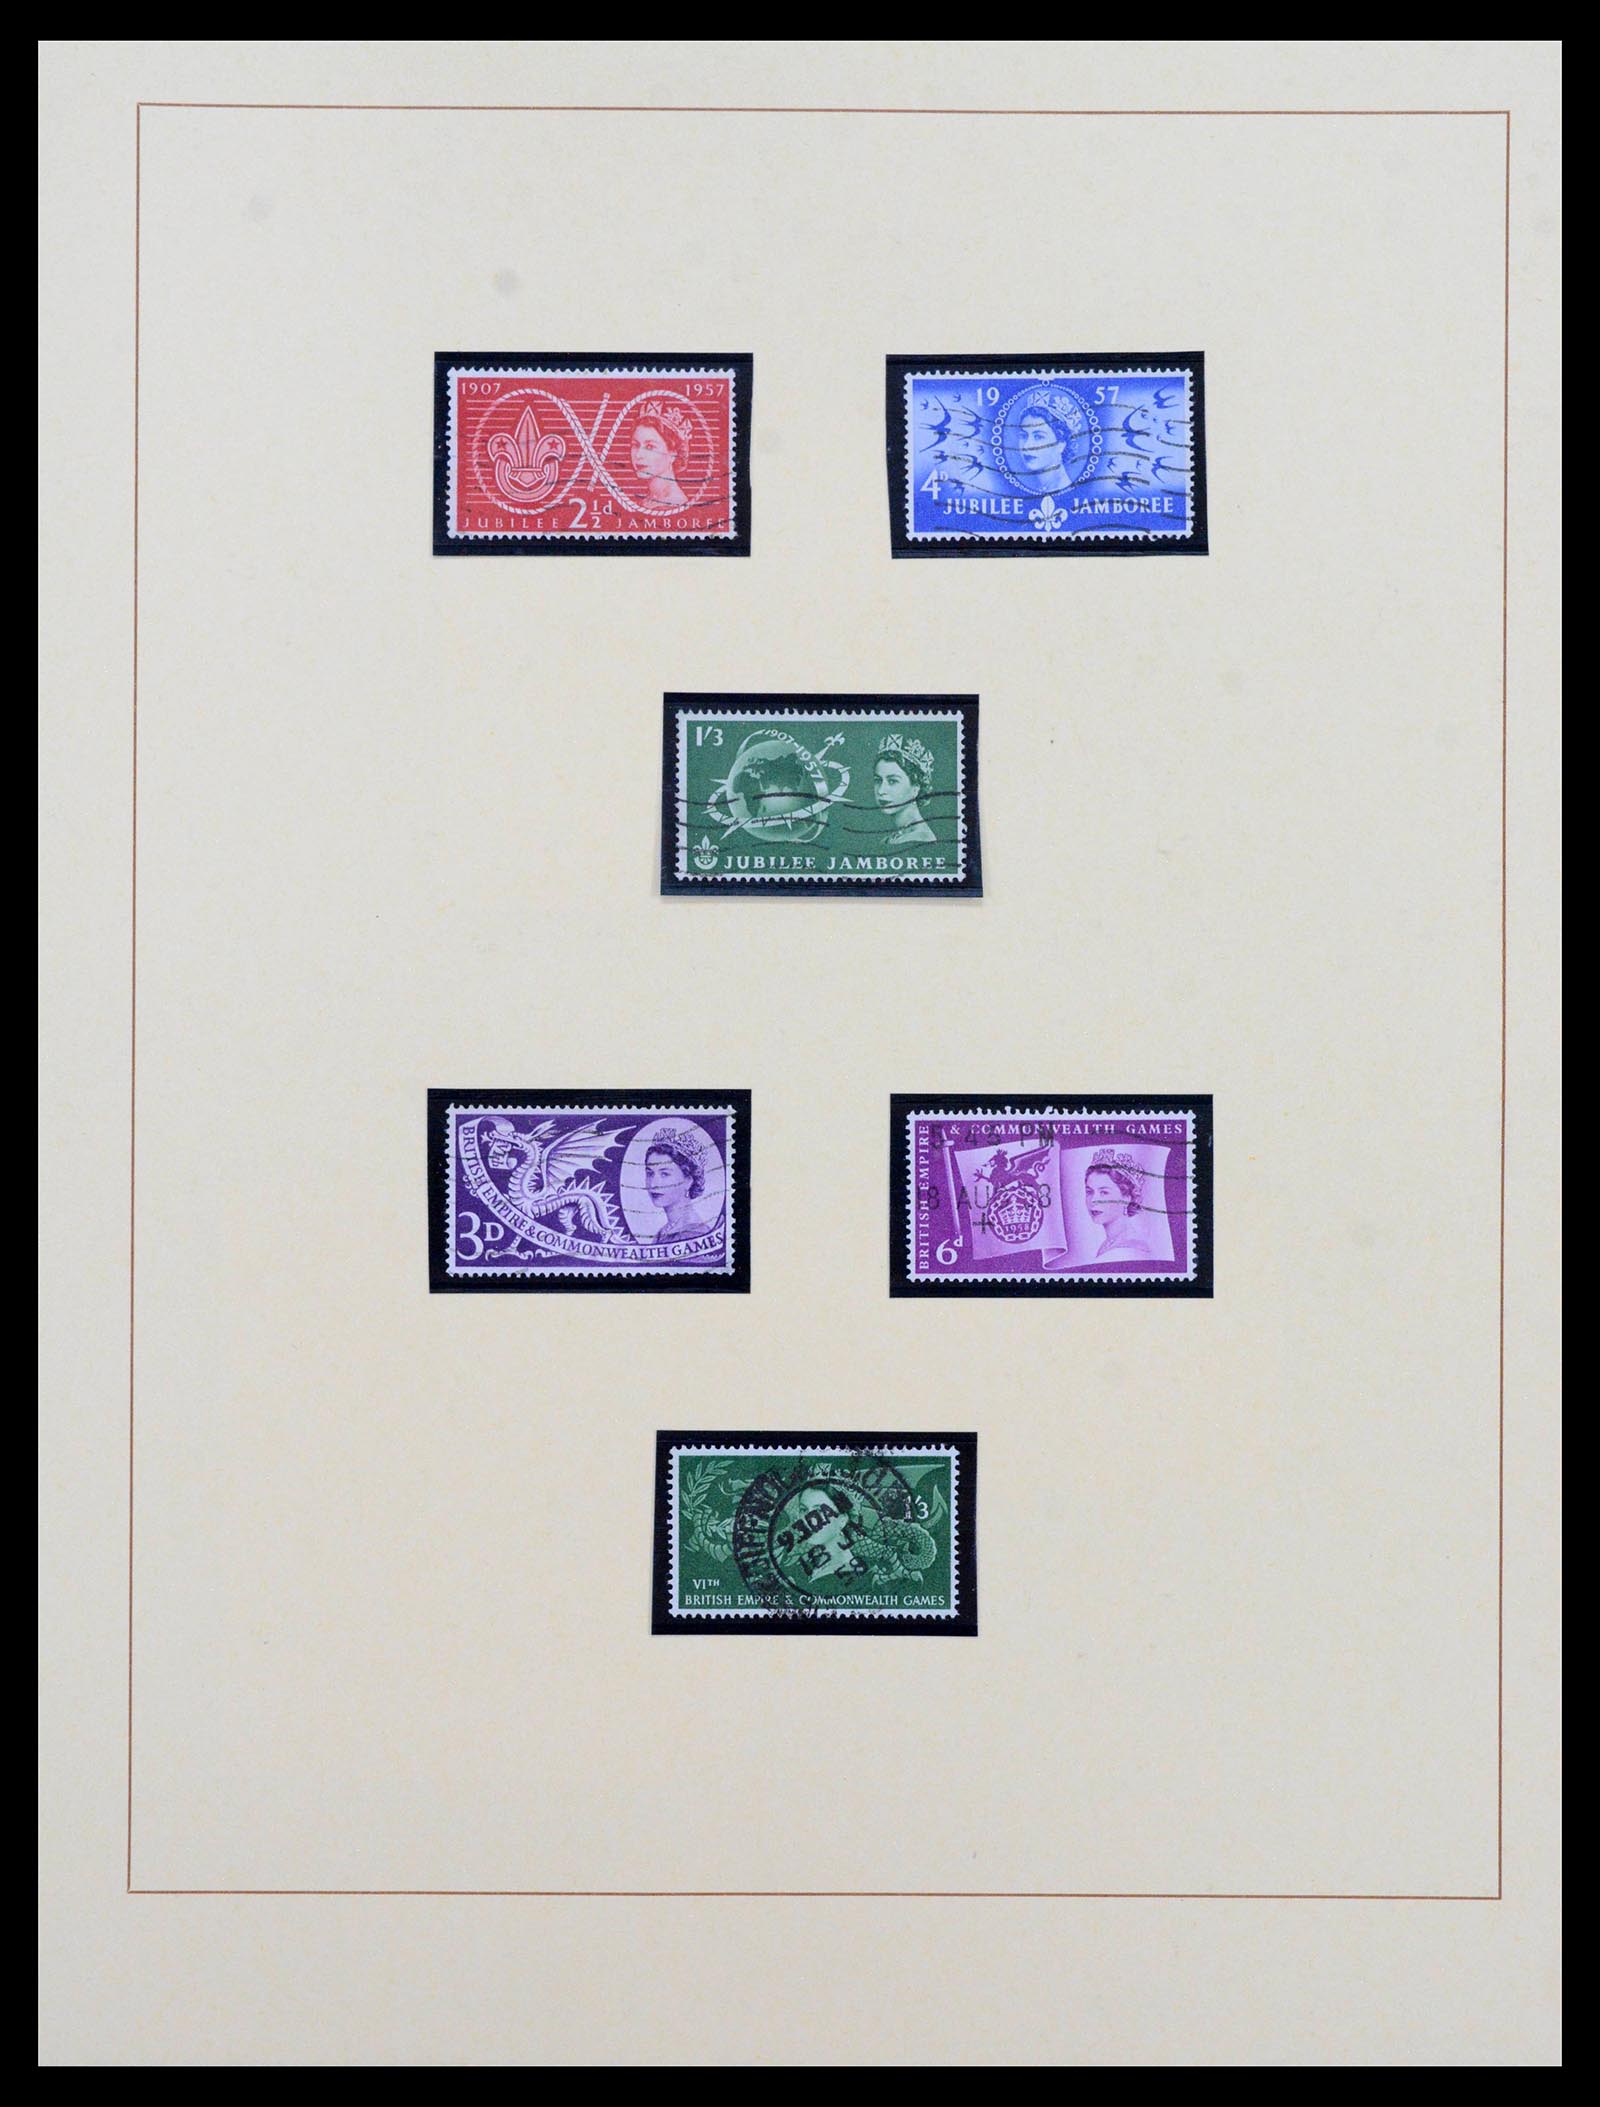 39375 0048 - Postzegelverzameling 39375 Engeland topverzameling 1840-1980.